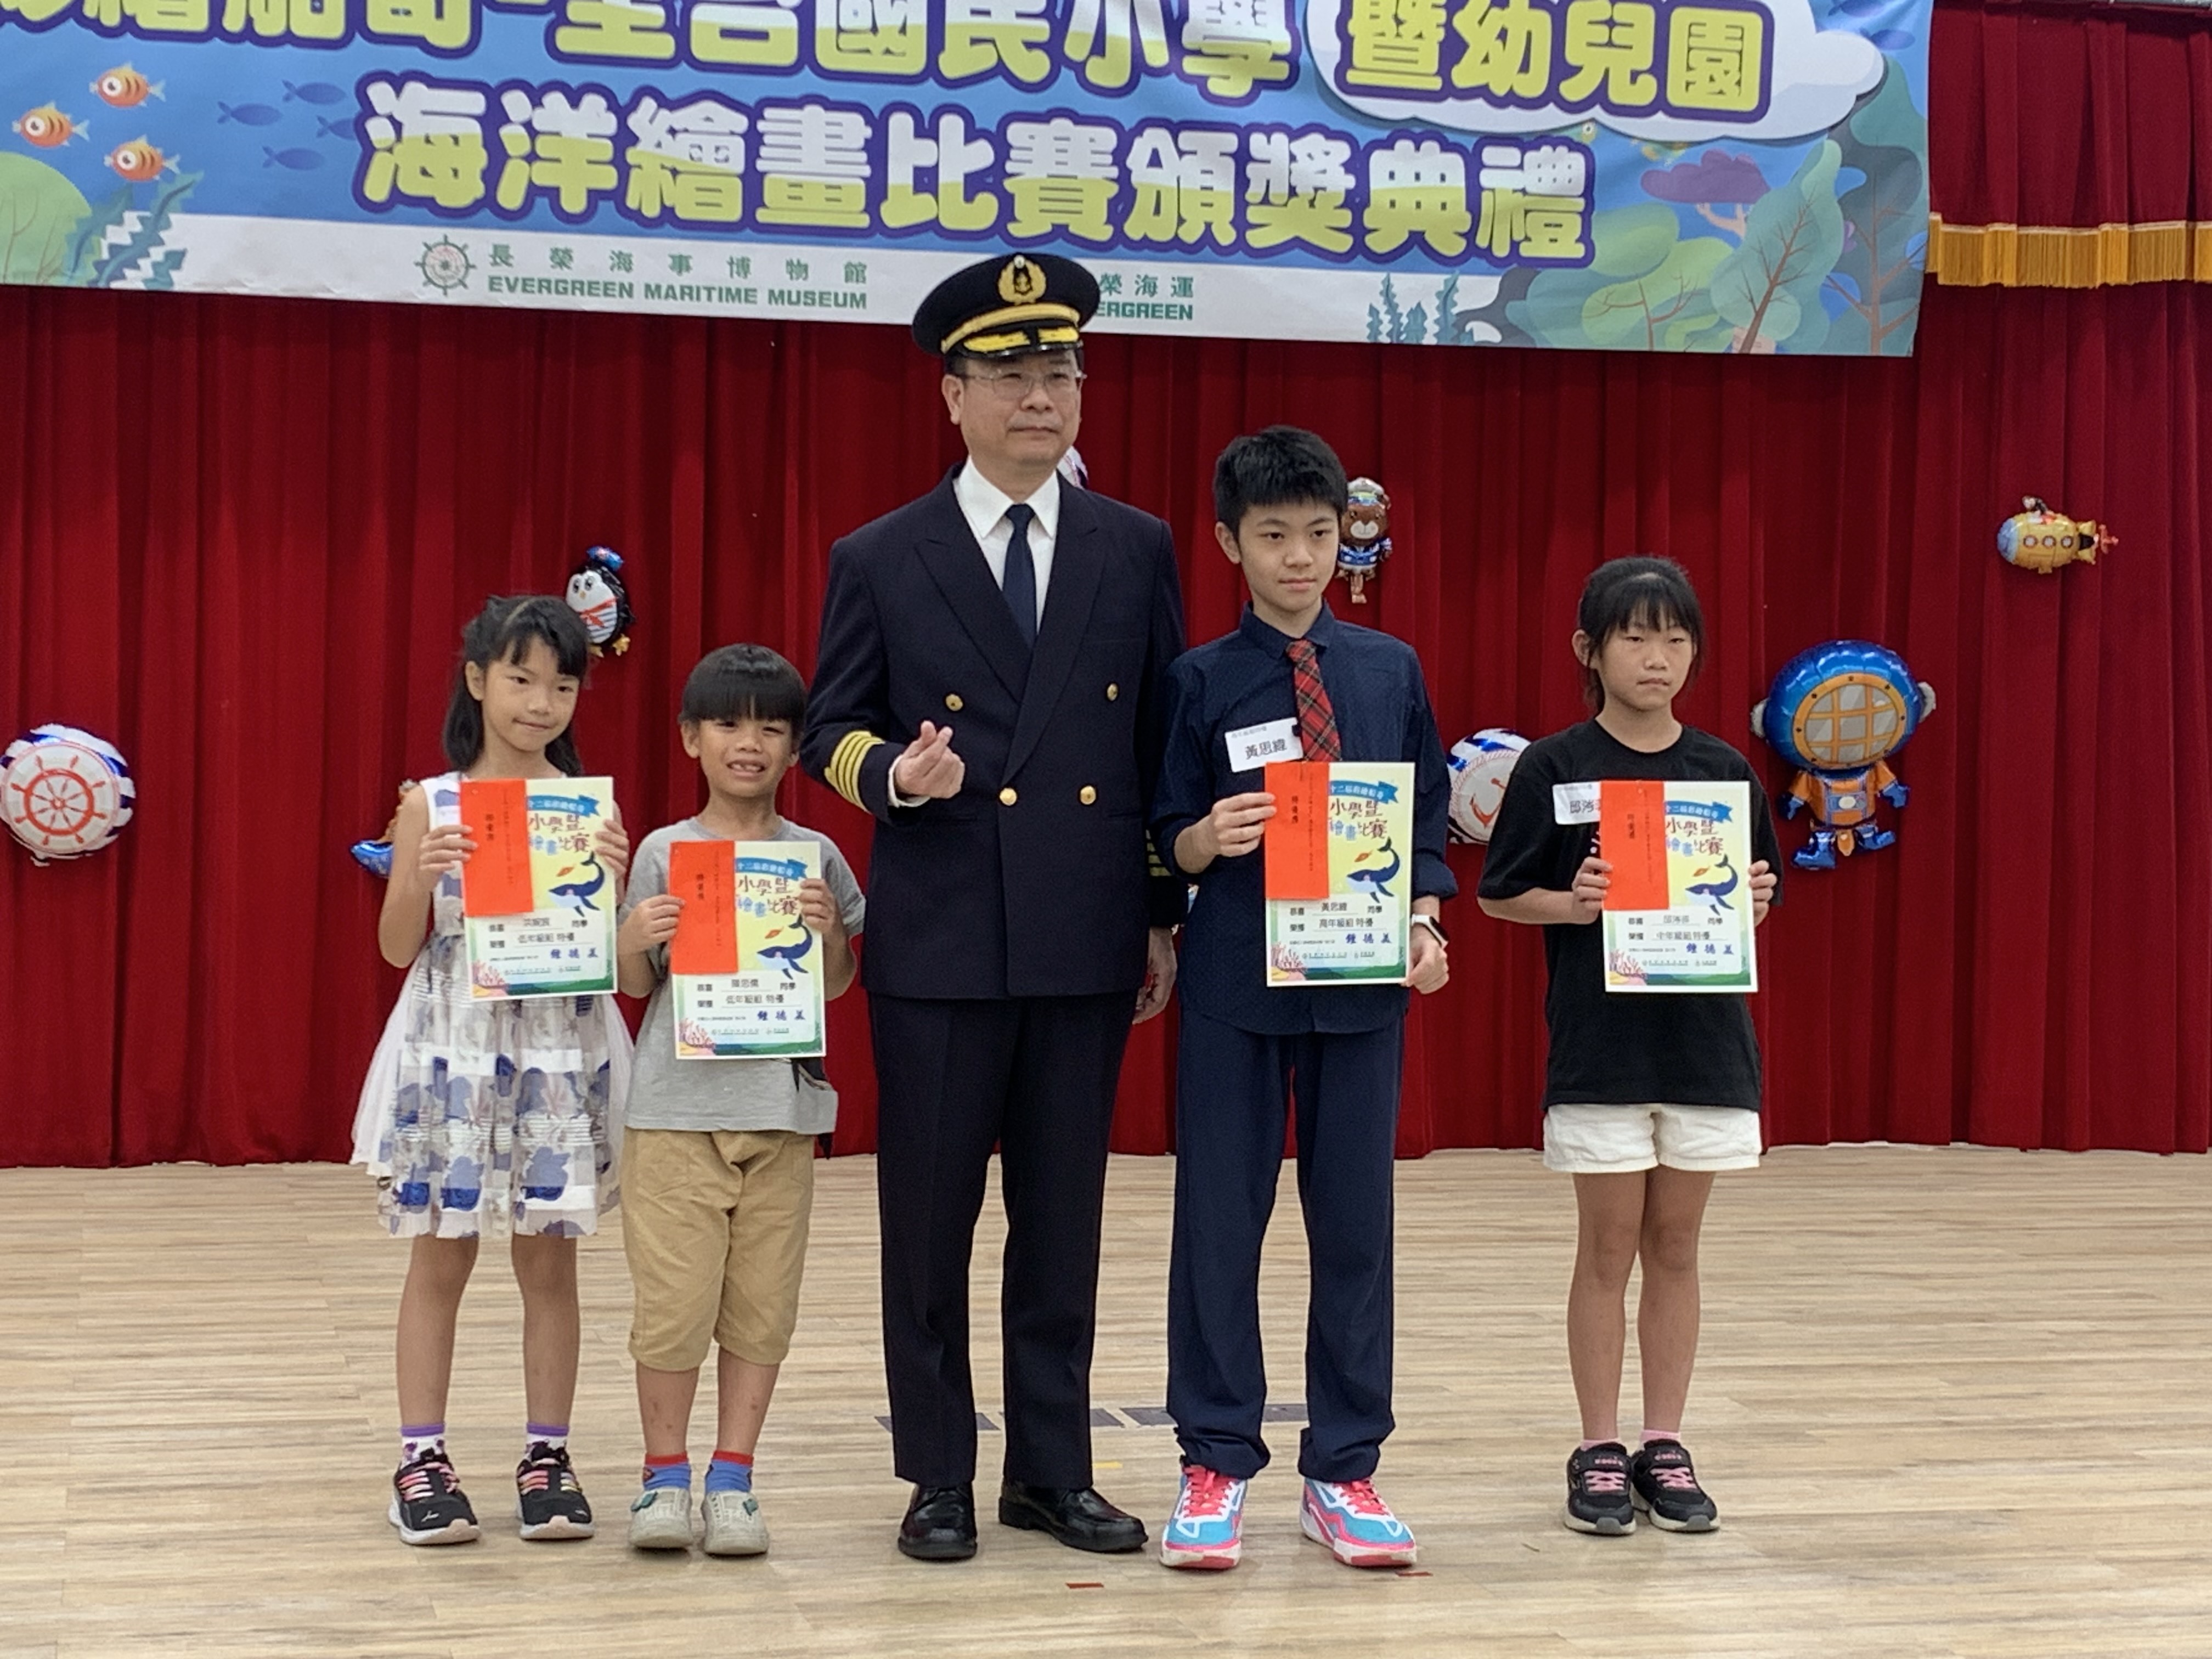 長榮海運黃義恩船長(中)頒發特優獎項給獲獎小朋友